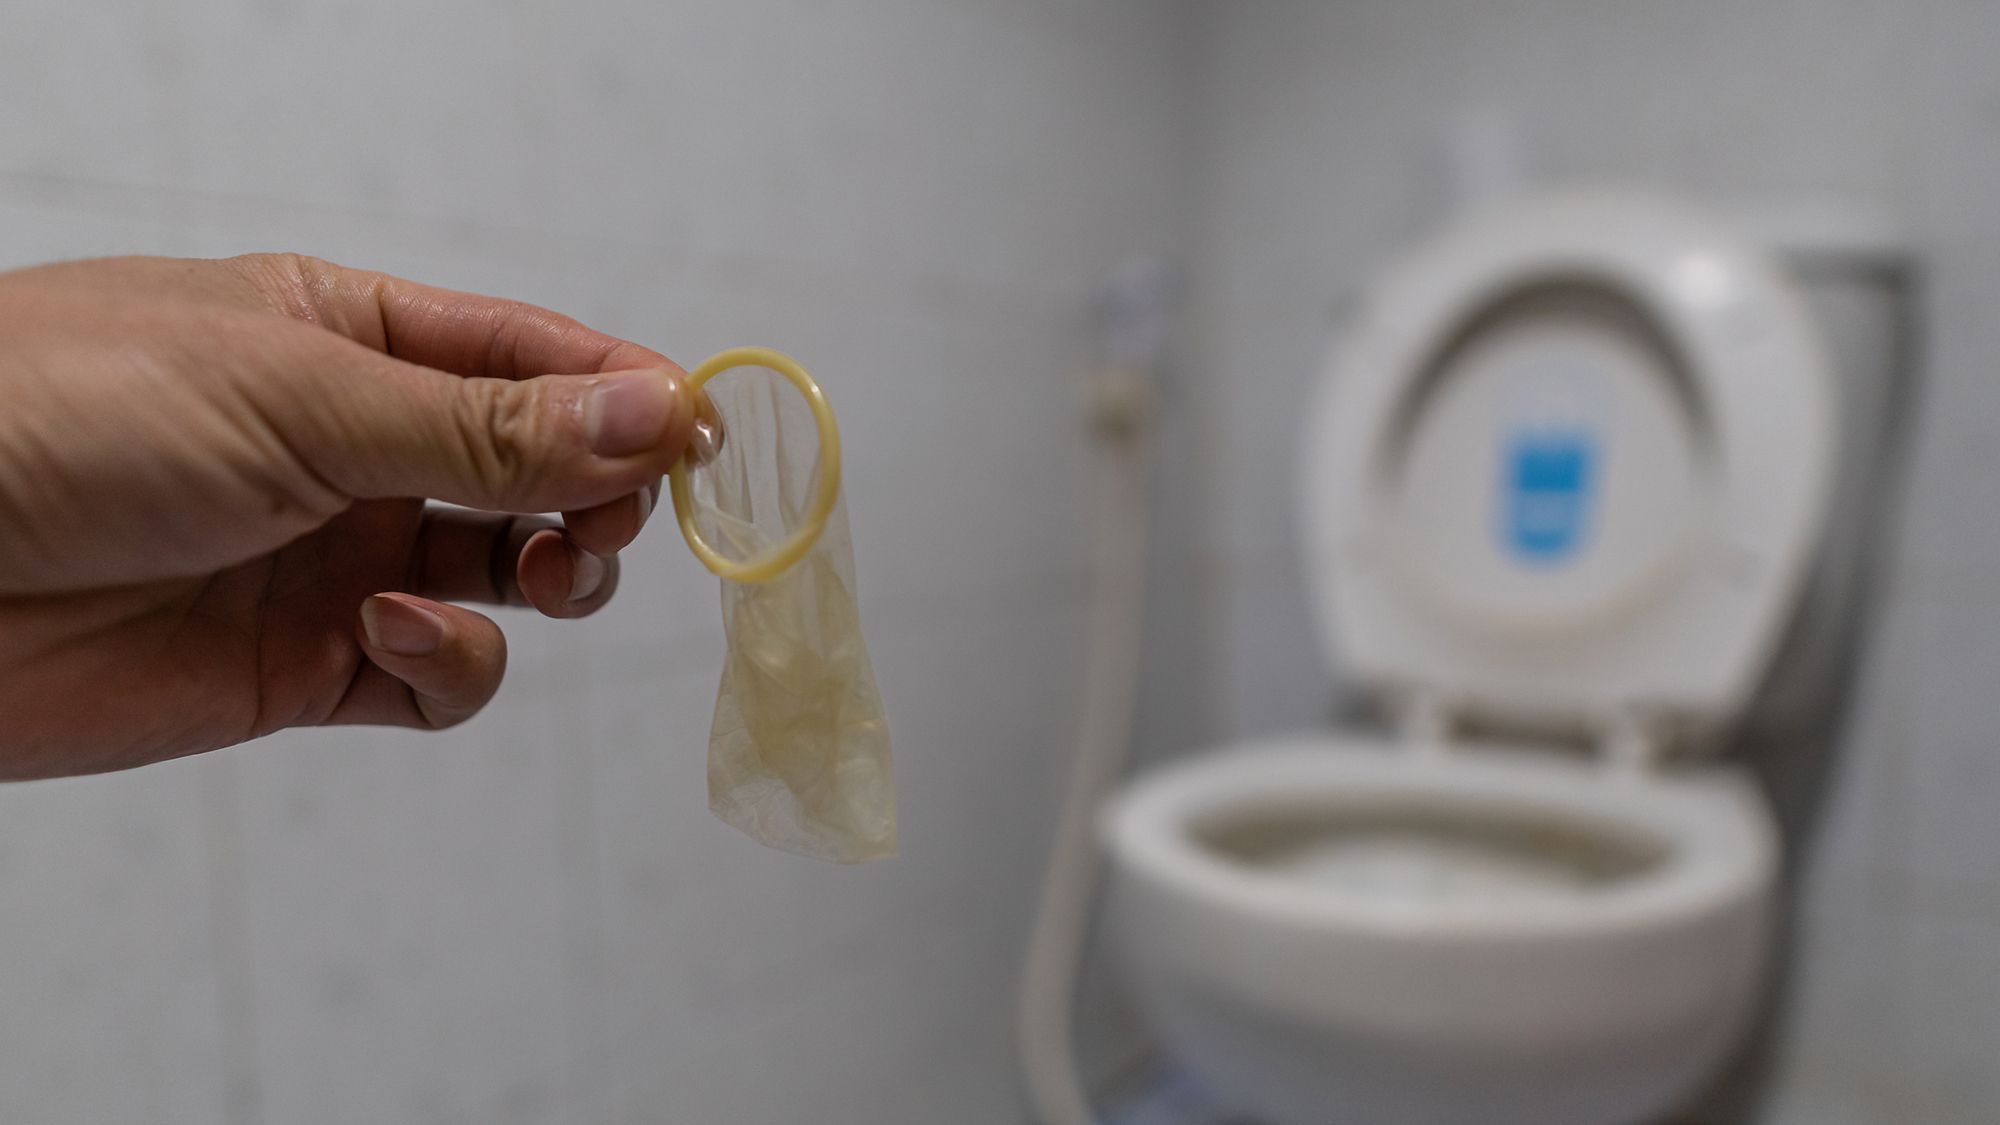 Eine Hand die ein benutztes Kondom hält, im Hintergrund ist eine Toilette